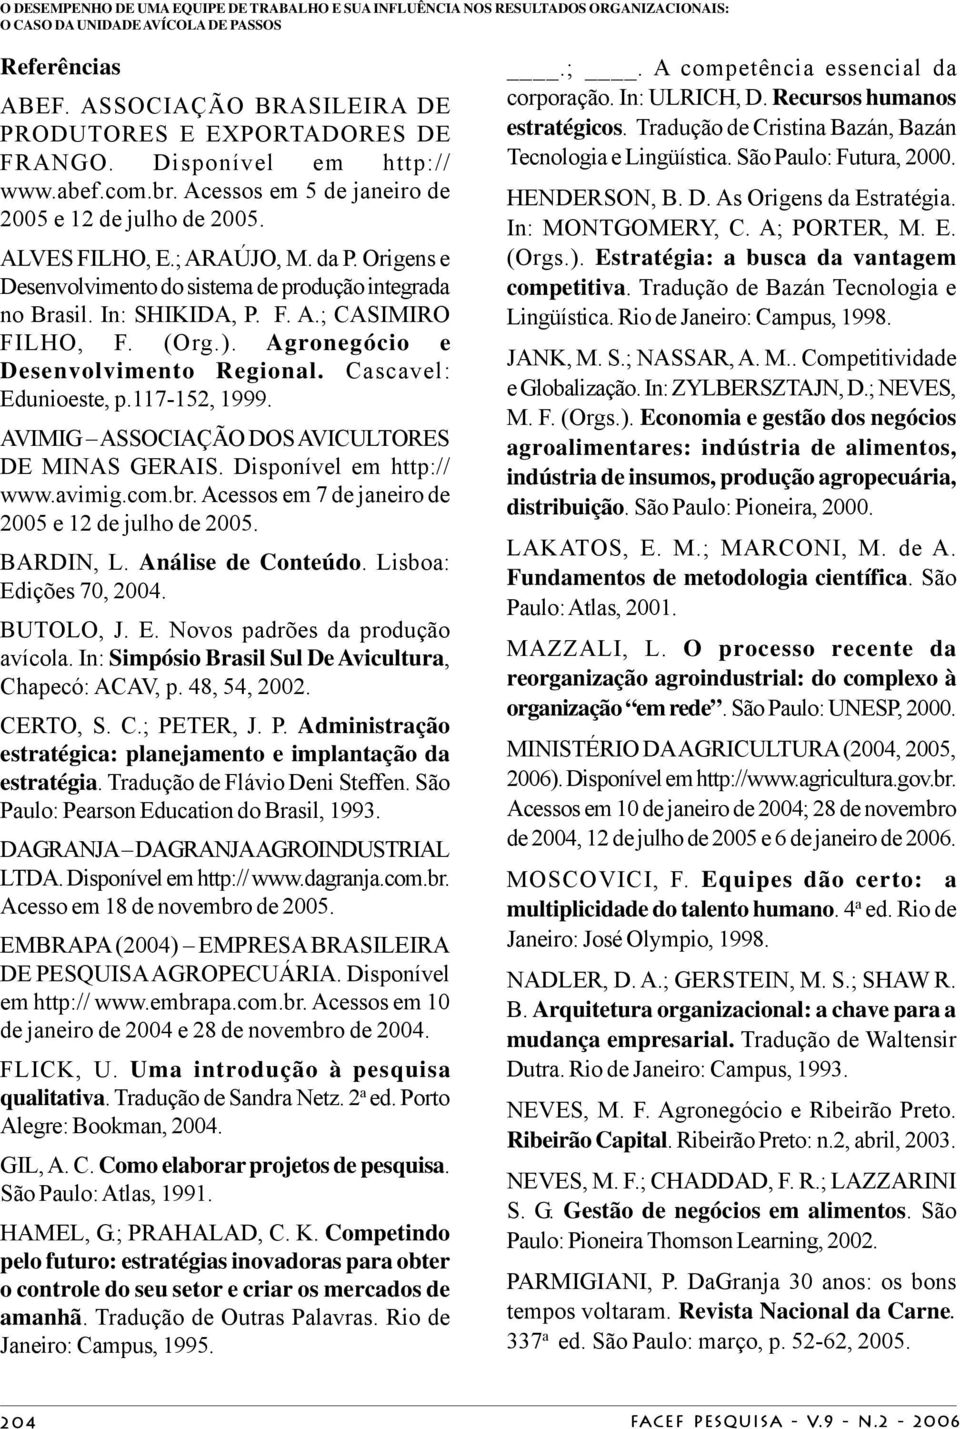 Origens e Desenvolvimento do sistema de produção integrada no Brasil. In: SHIKIDA, P. F. A.; CASIMIRO FILHO, F. (Org.). Agronegócio e Desenvolvimento Regional. Cascavel: Edunioeste, p.117-152, 1999.